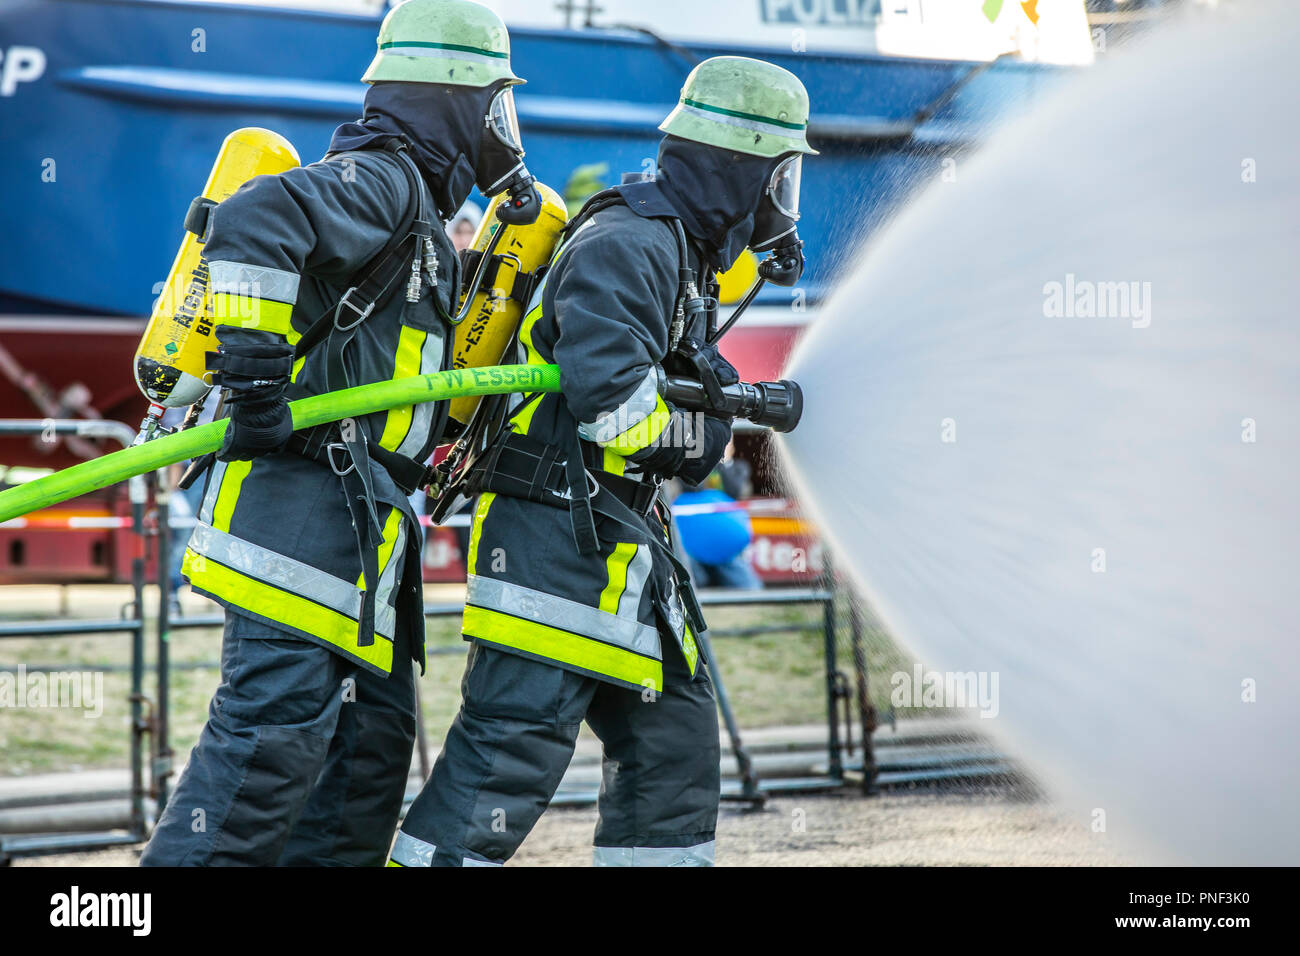 Die feuerwehrmänner in der Brandbekämpfung, Übung, Brand Simulator für  chemische Brände, Feuerwehr Essen, Deutschland Stockfotografie - Alamy